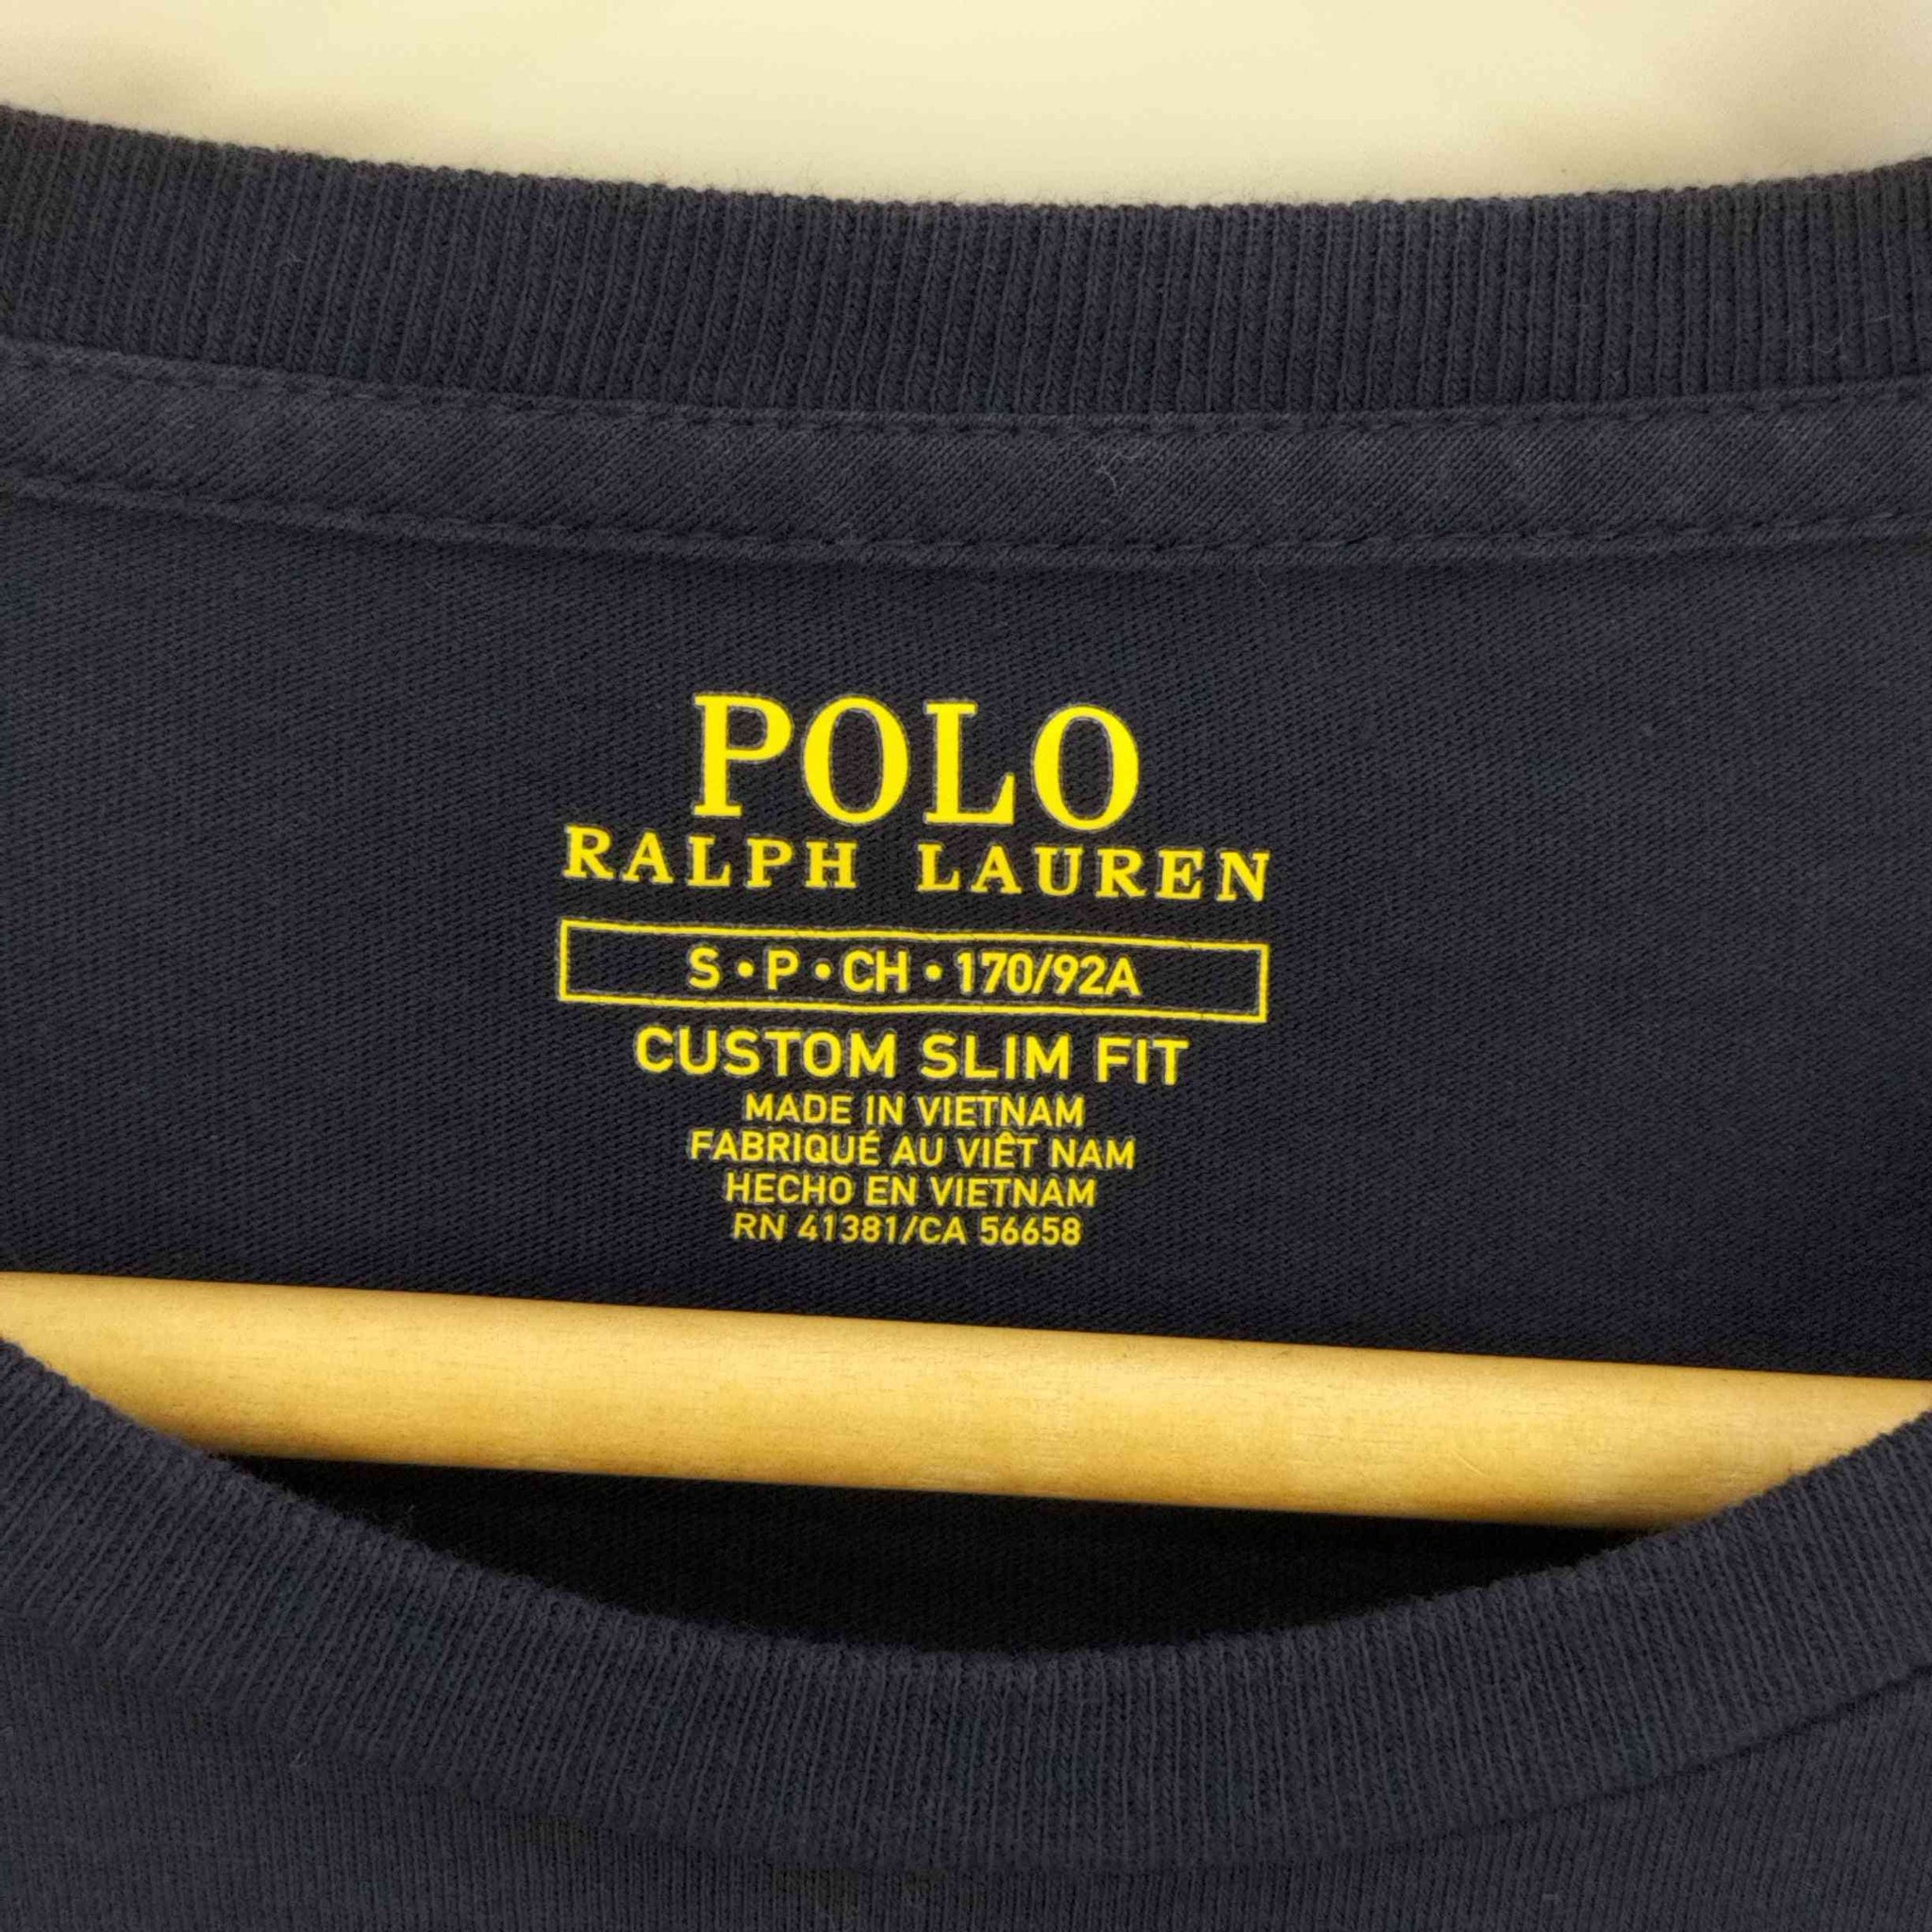 POLO RALPH LAUREN(ポロラルフローレン)CUSTOM SLIM FIT ポニー刺繍 クルーネックTシャツ